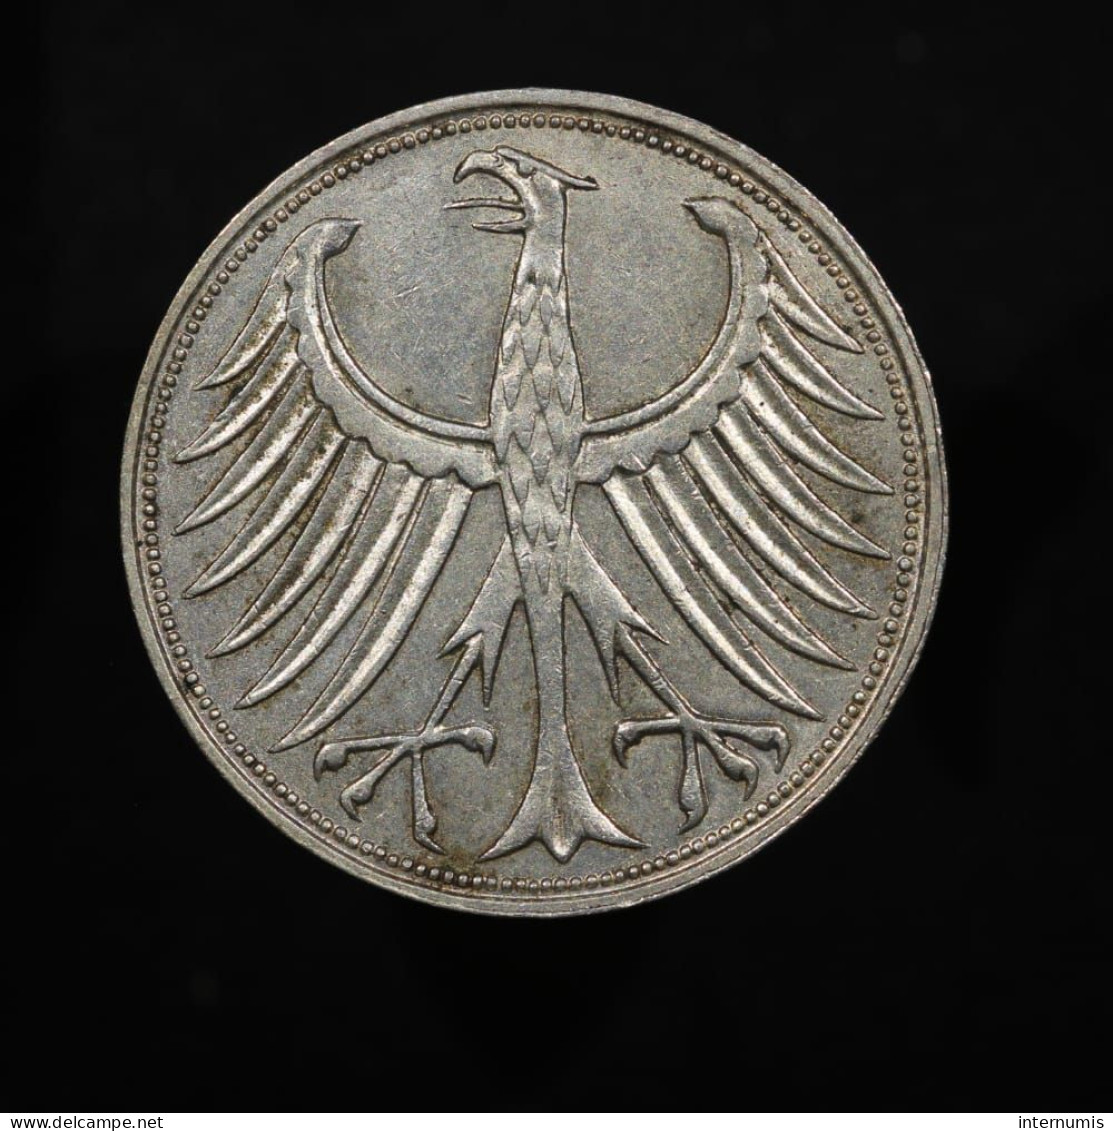 Allemagne / Germany, 5 Deutsche Mark, 1967, J - Hamburg, Argent (Silver), SUP (AU), KM#112 - 5 Mark